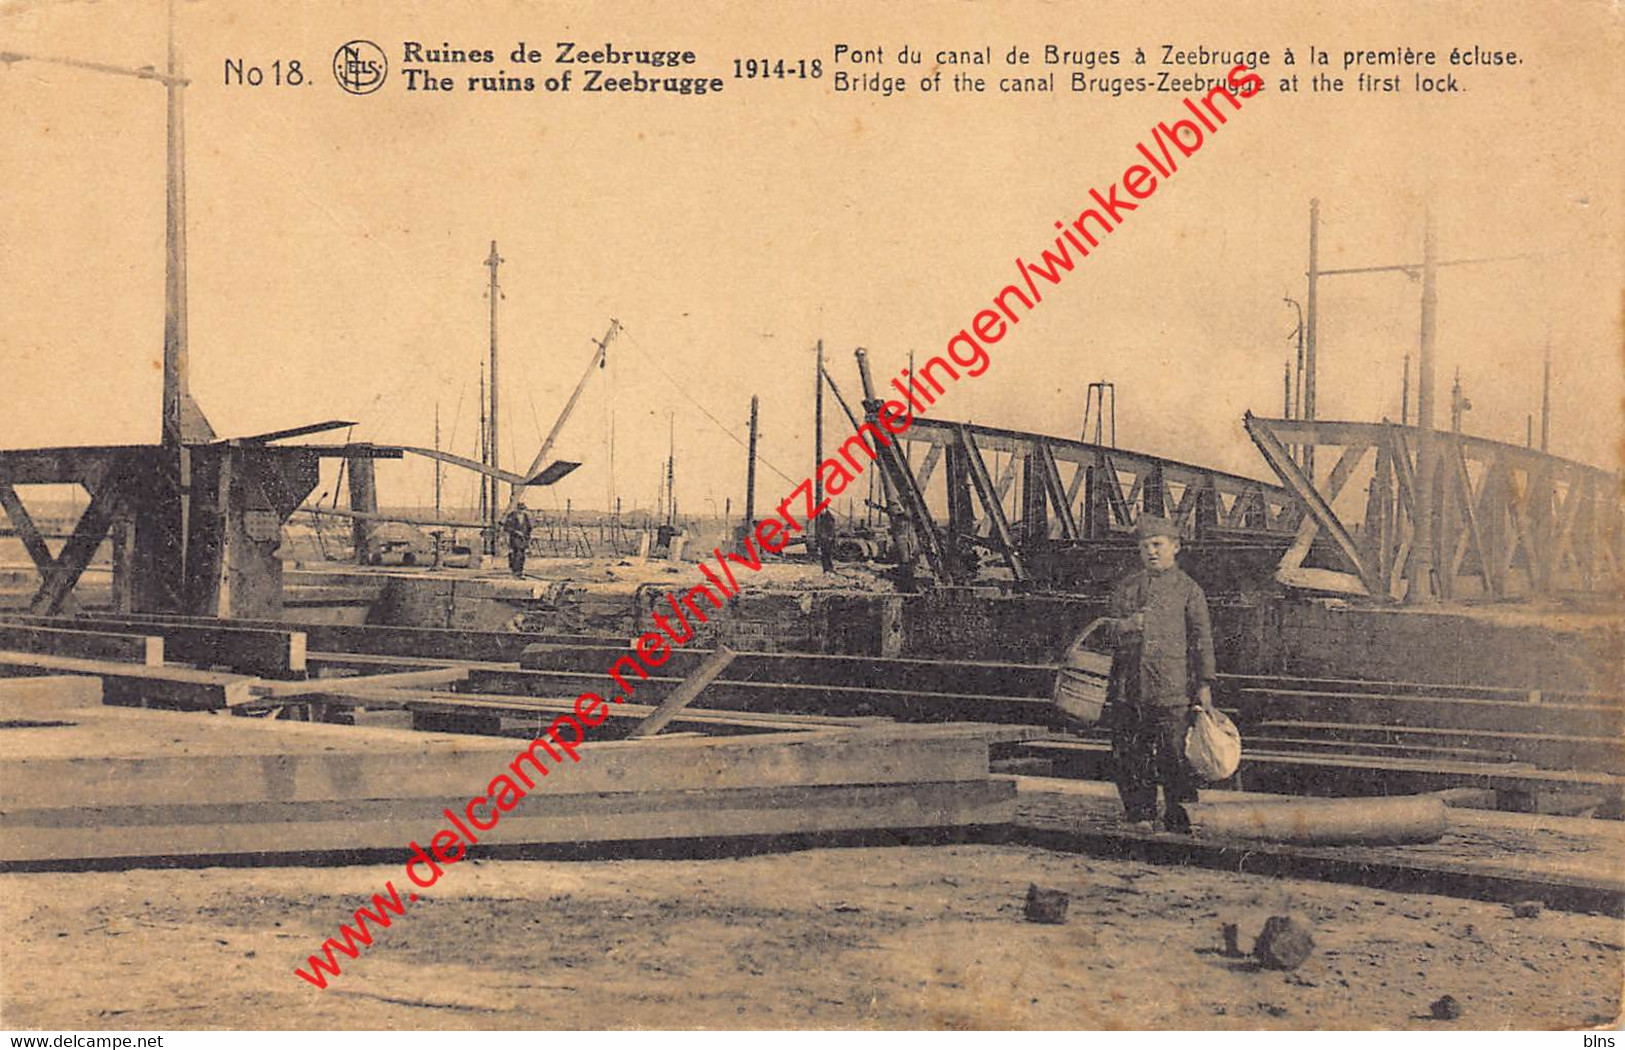 Pont Du Canal De Bruges à Zeebrugge à La Première écluse - 1914-1918 - Zeebrugge - Zeebrugge